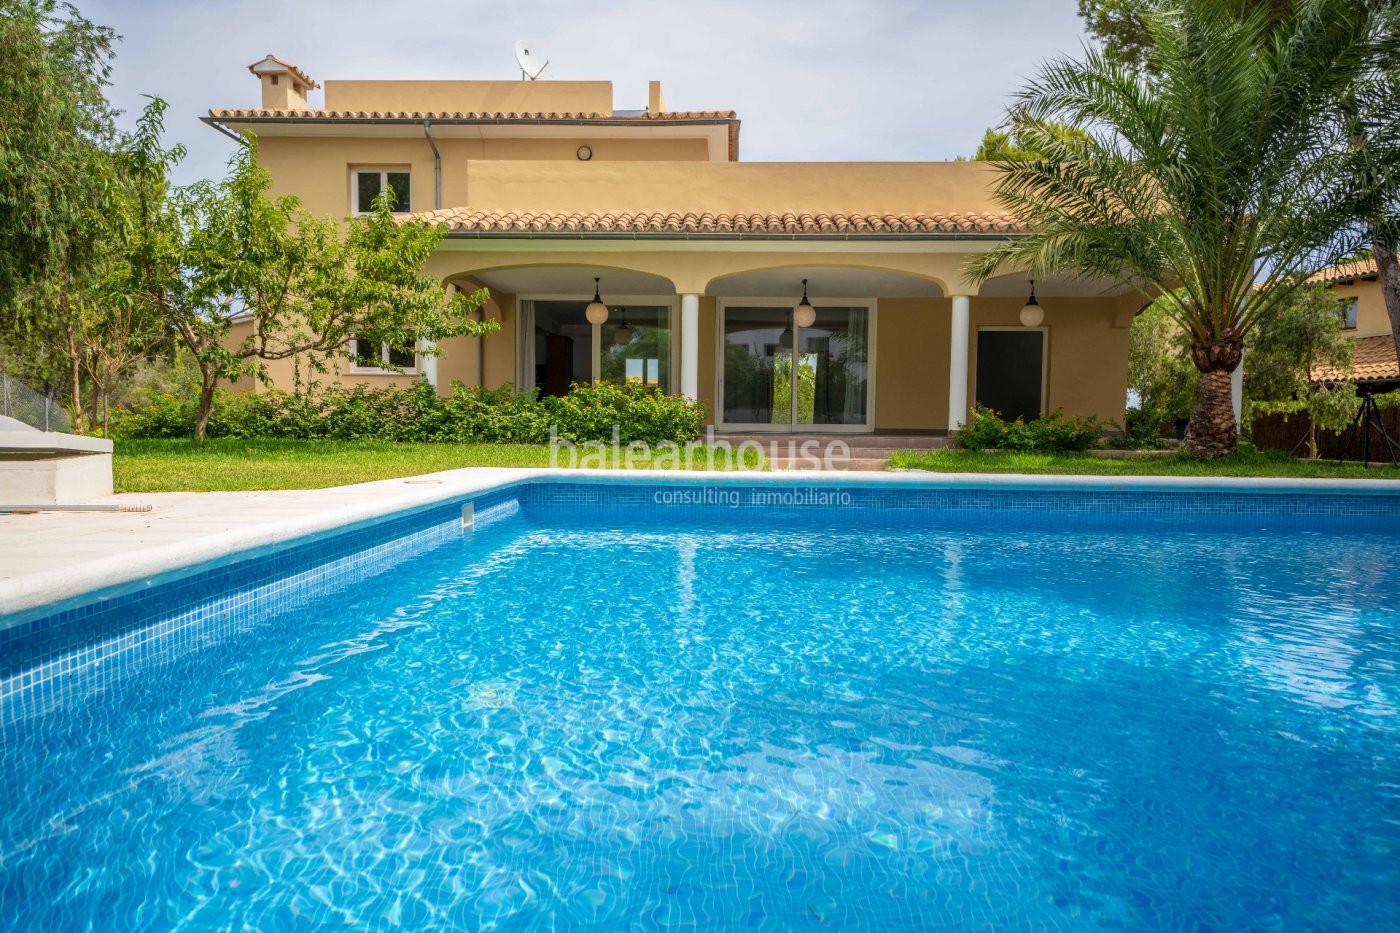 Encantador chalet mediterráneo desde donde ver el mar con piscina, terrazas y jardín